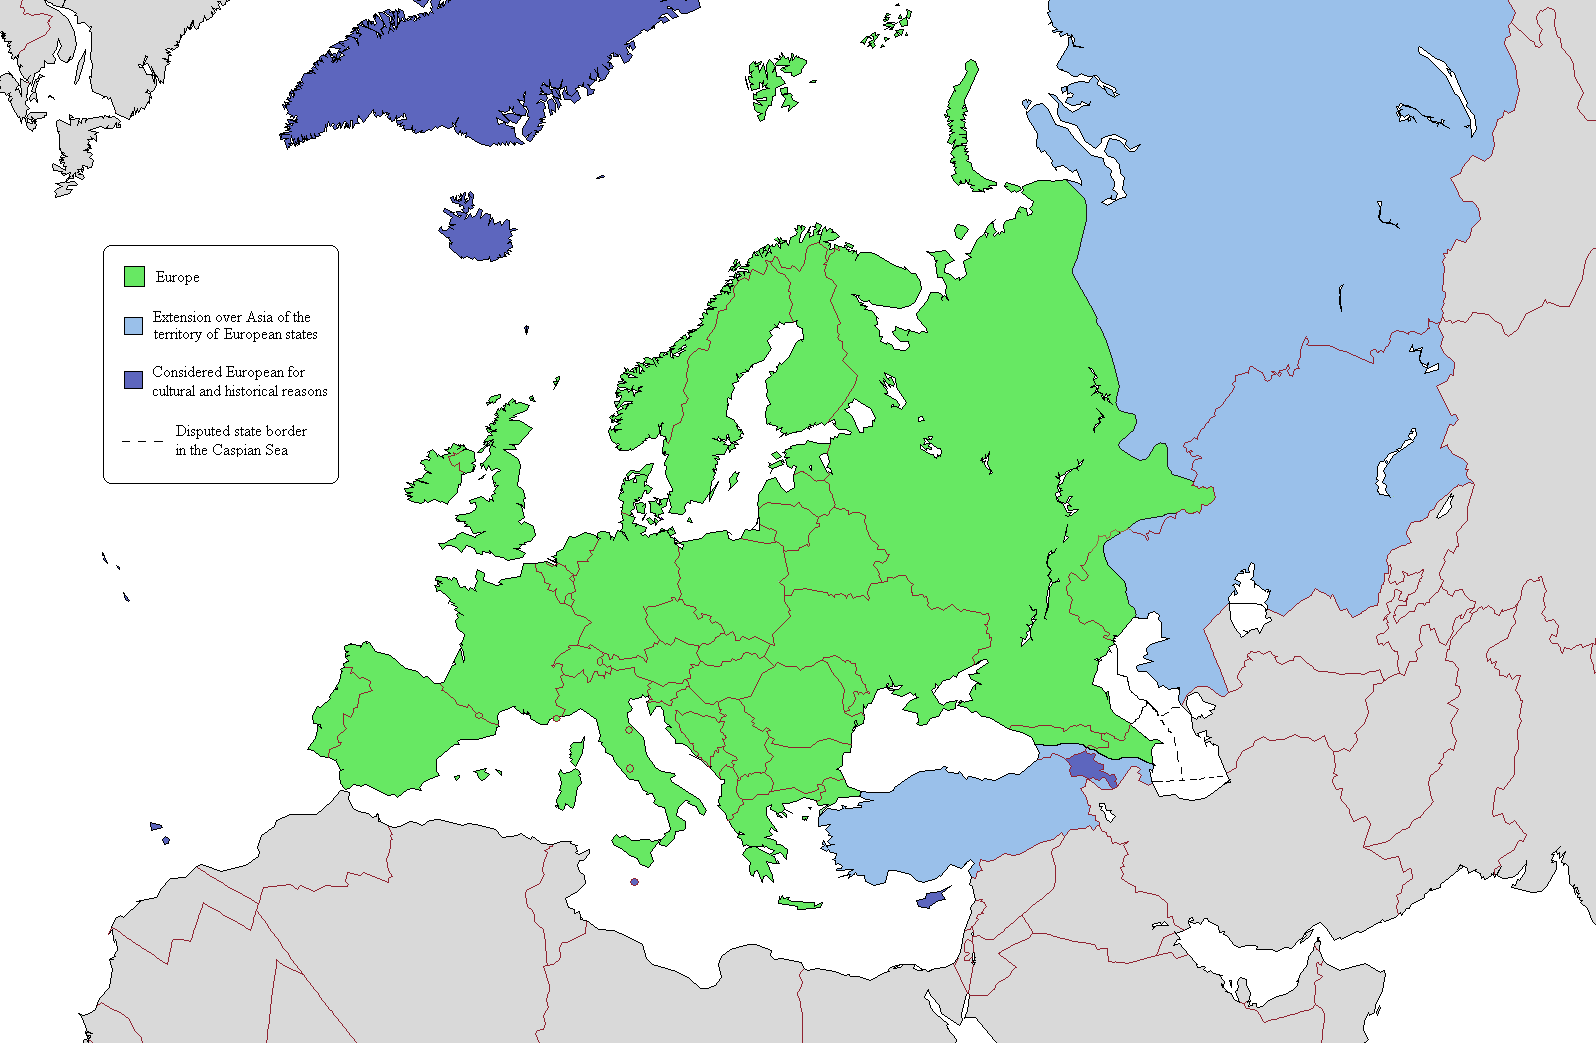 Mapa politico mudo de Europa 2007